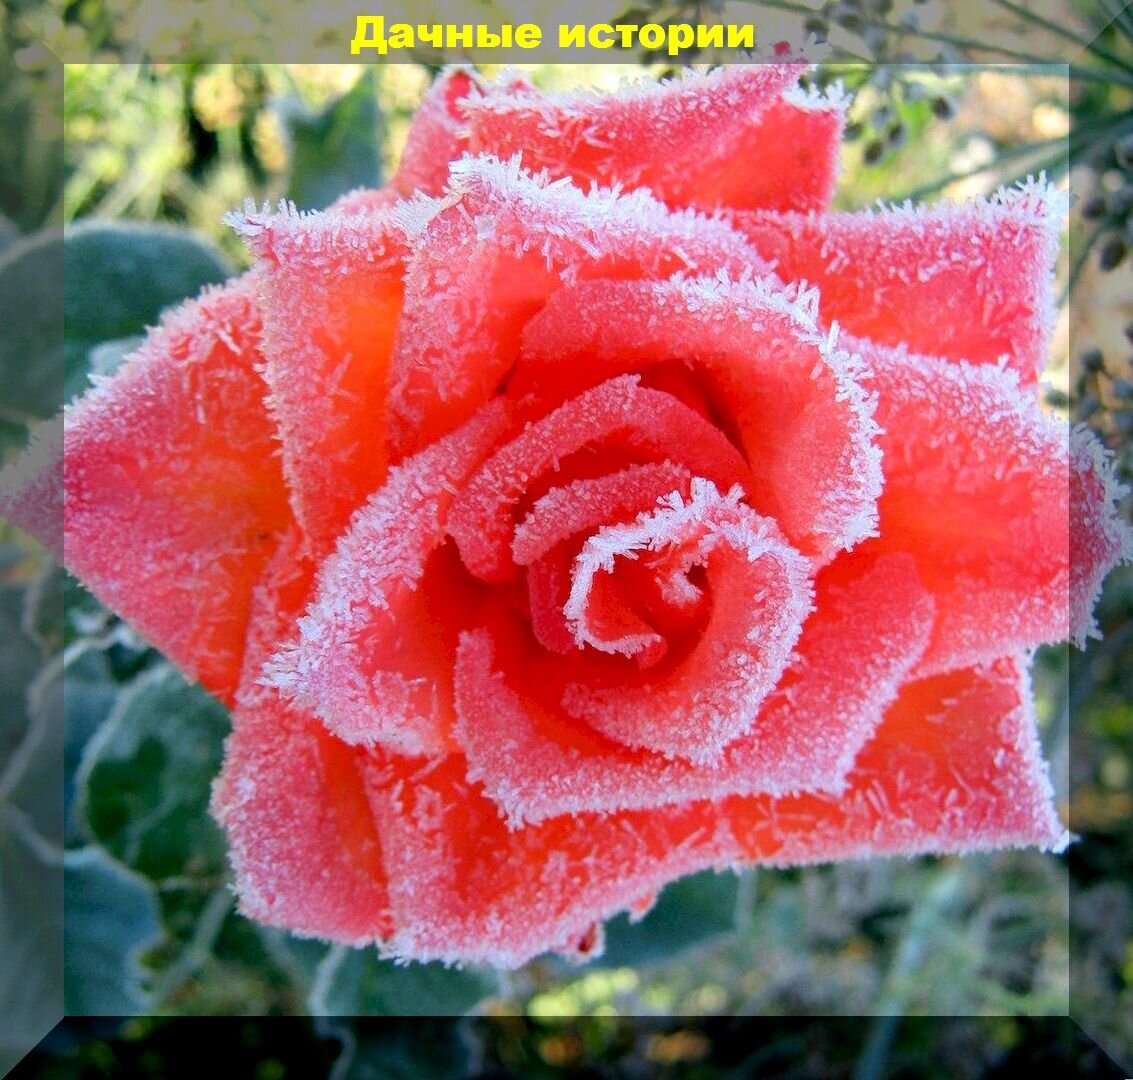 Правила ухода за розами в сентябре - октябре: как подкармливать розы осенью, как защищать розы от болезней и укрывать розы на зиму